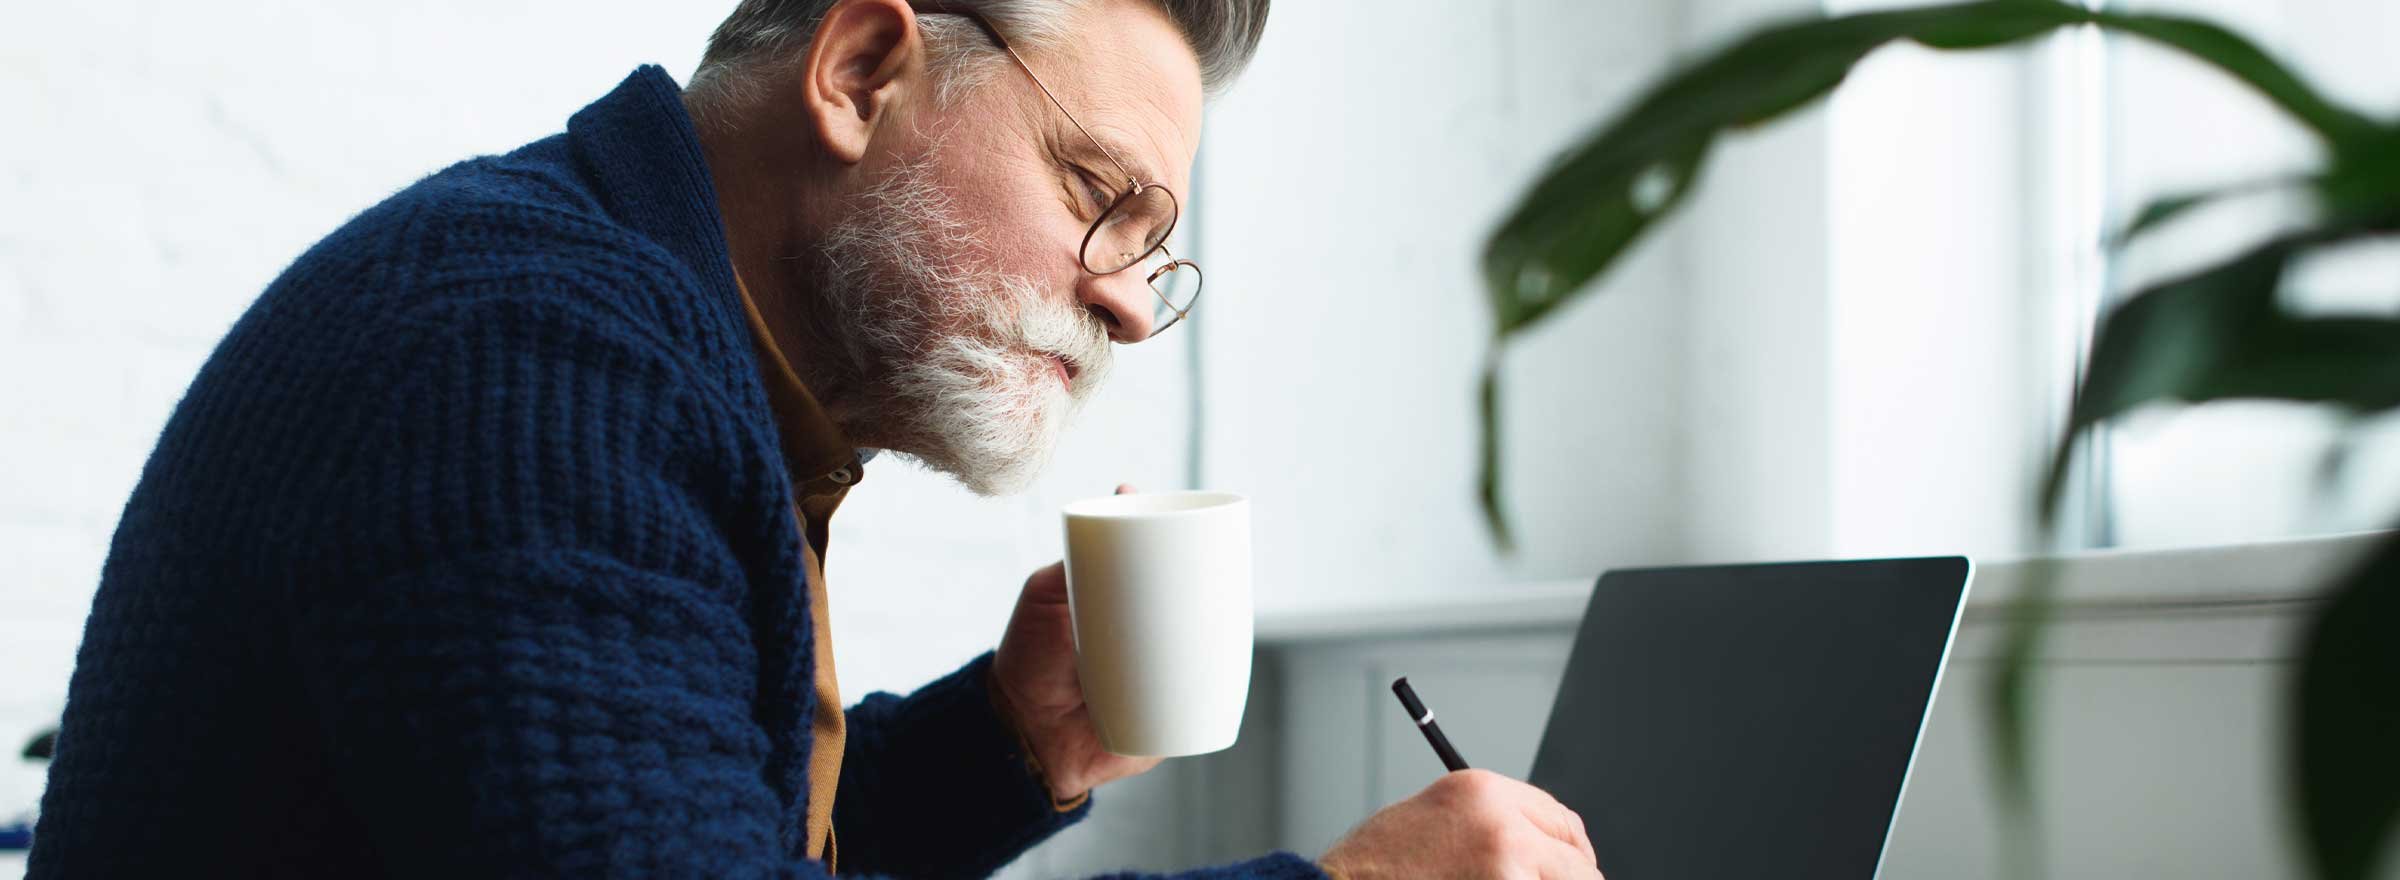 man at a computer holding a mug and a pencil